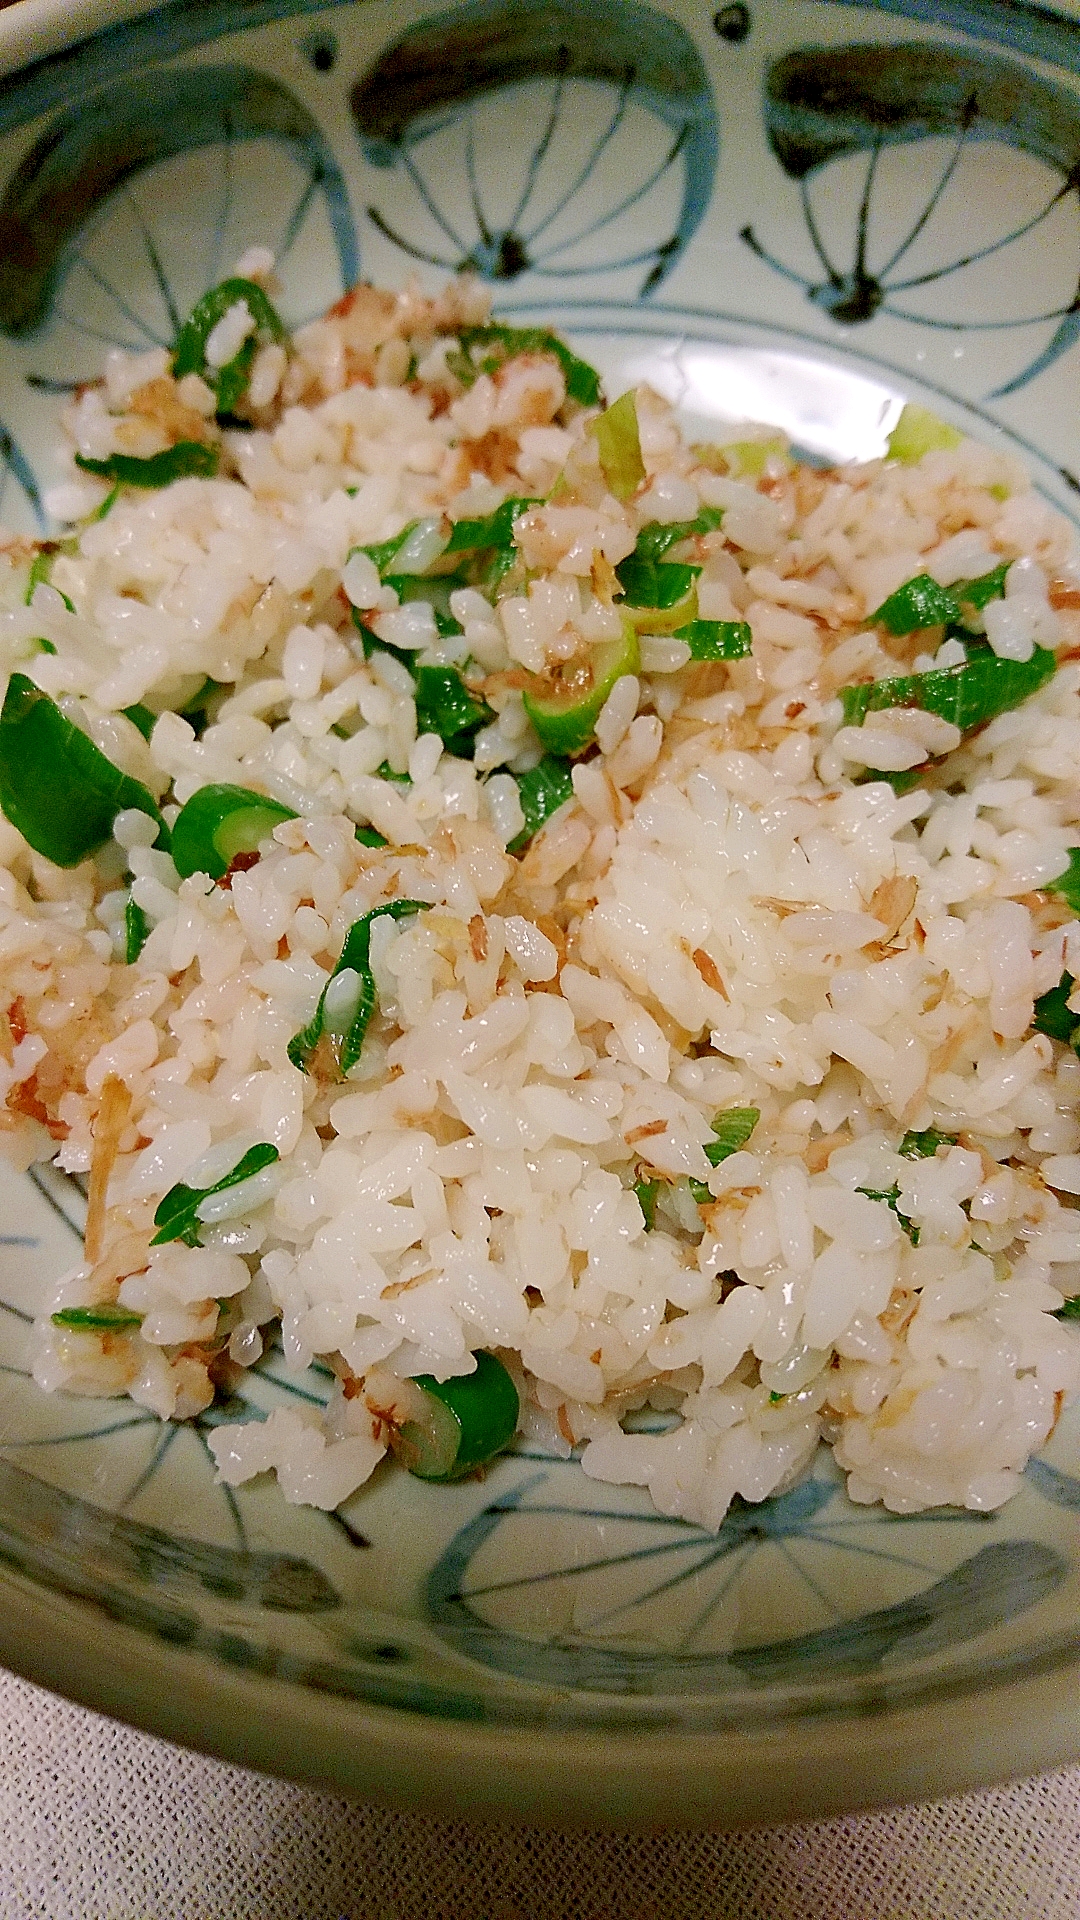 【米料理】ネギの青い部分と鰹節でチャーハン